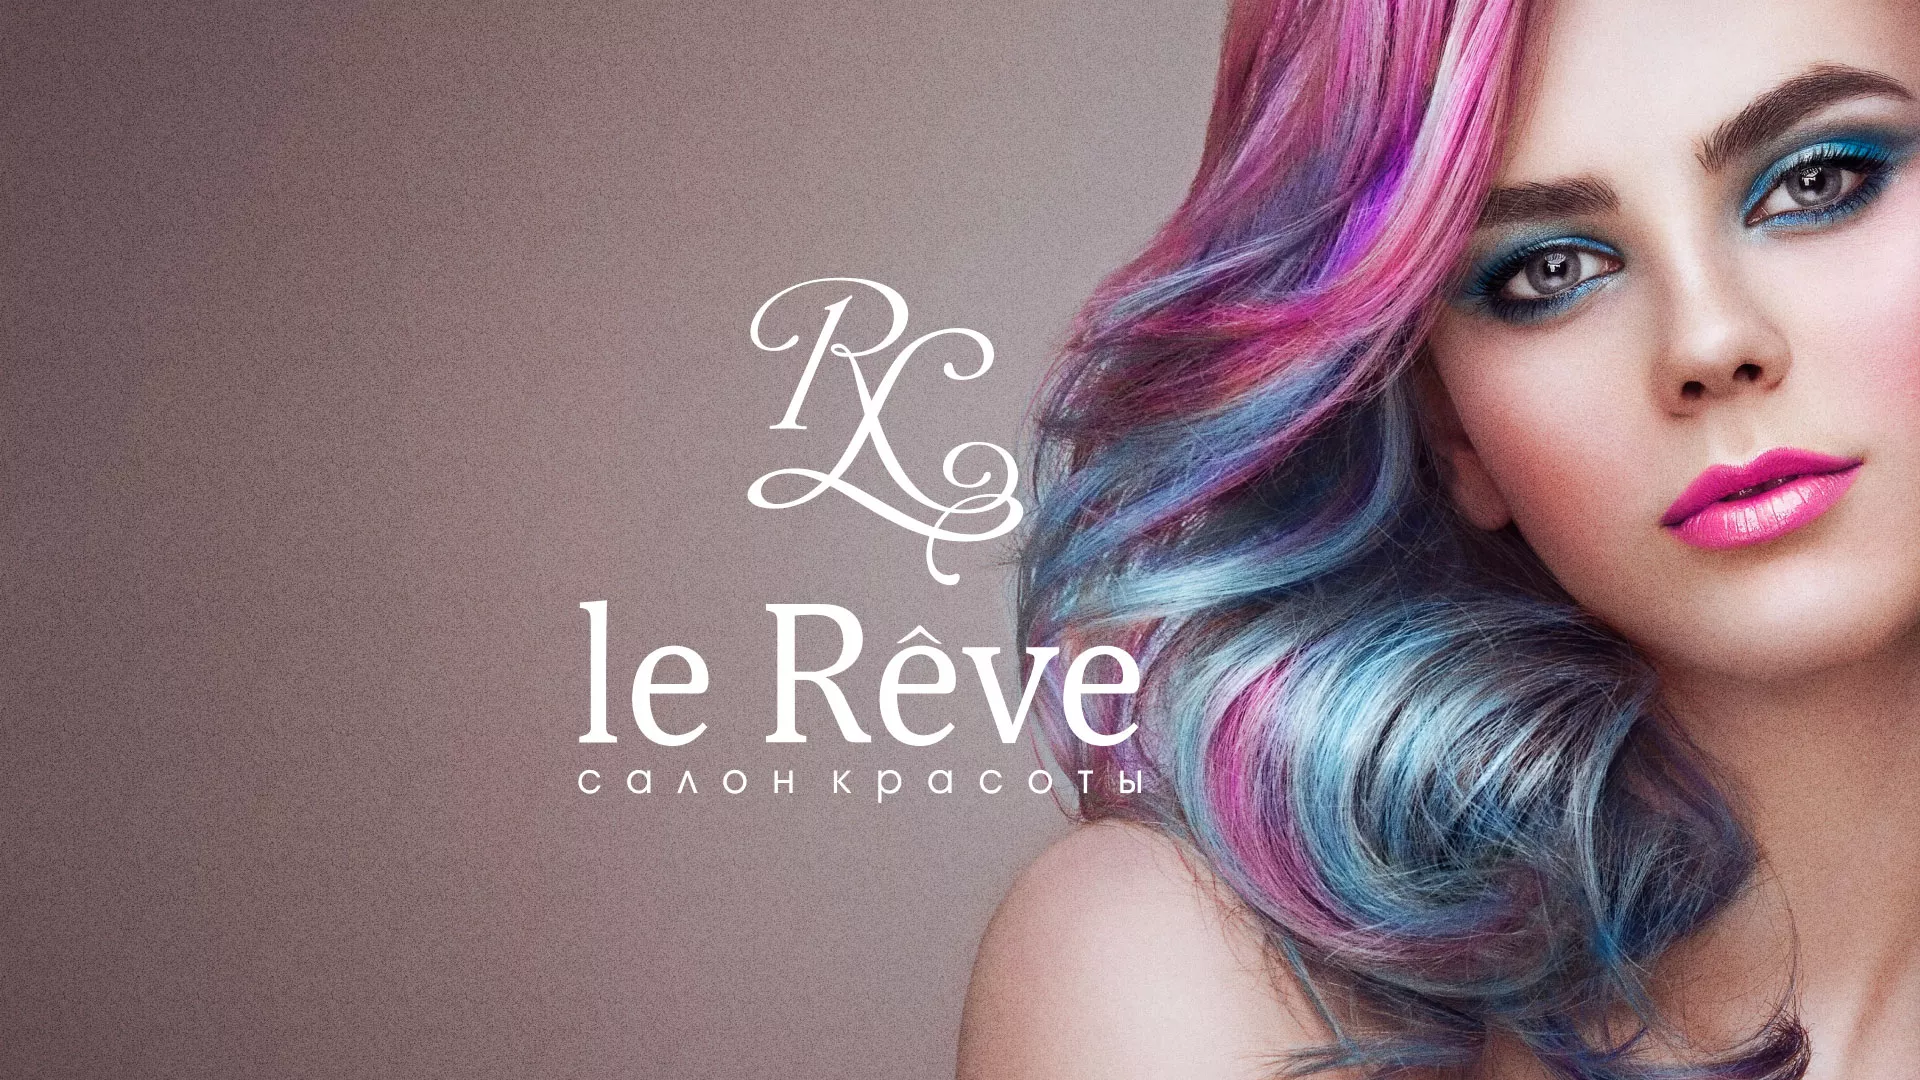 Создание сайта для салона красоты «Le Reve» в Сасово